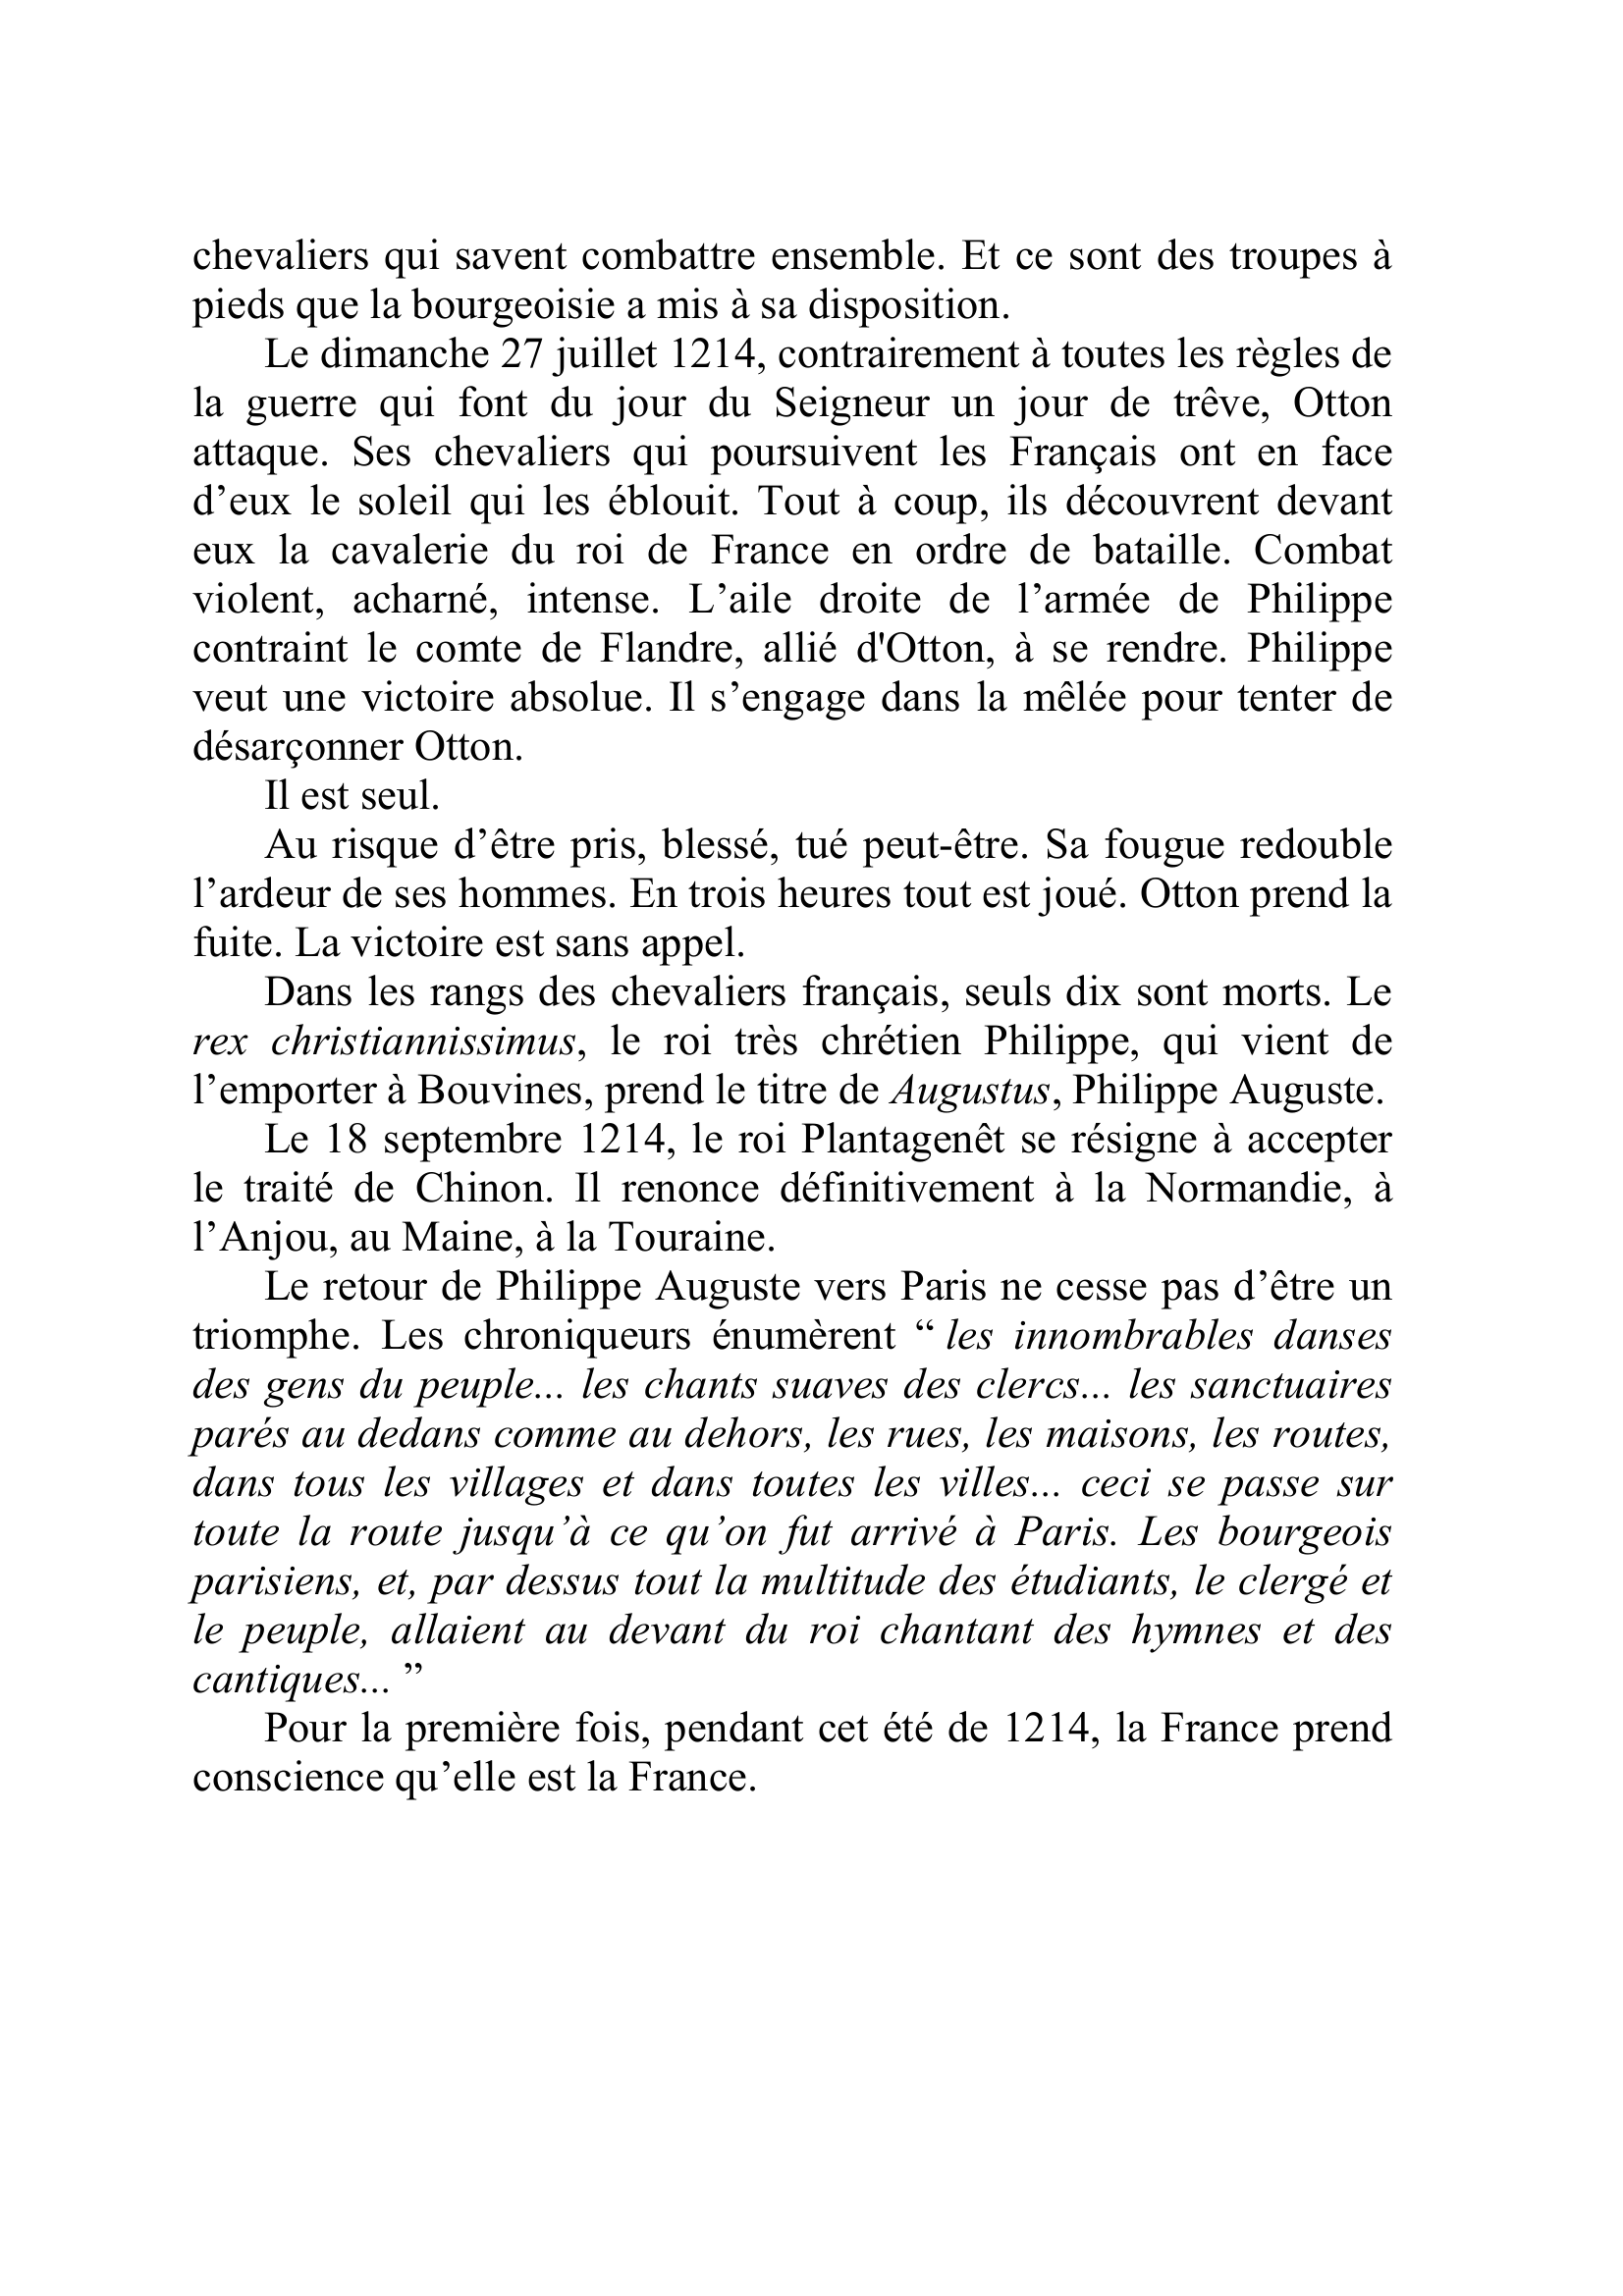 Prévisualisation du document " De notoriété publique, le roi de France ne reconnaît au temporel aucune autorité supérieure à la sienne" déclare en 1204 le pape Innocent III.